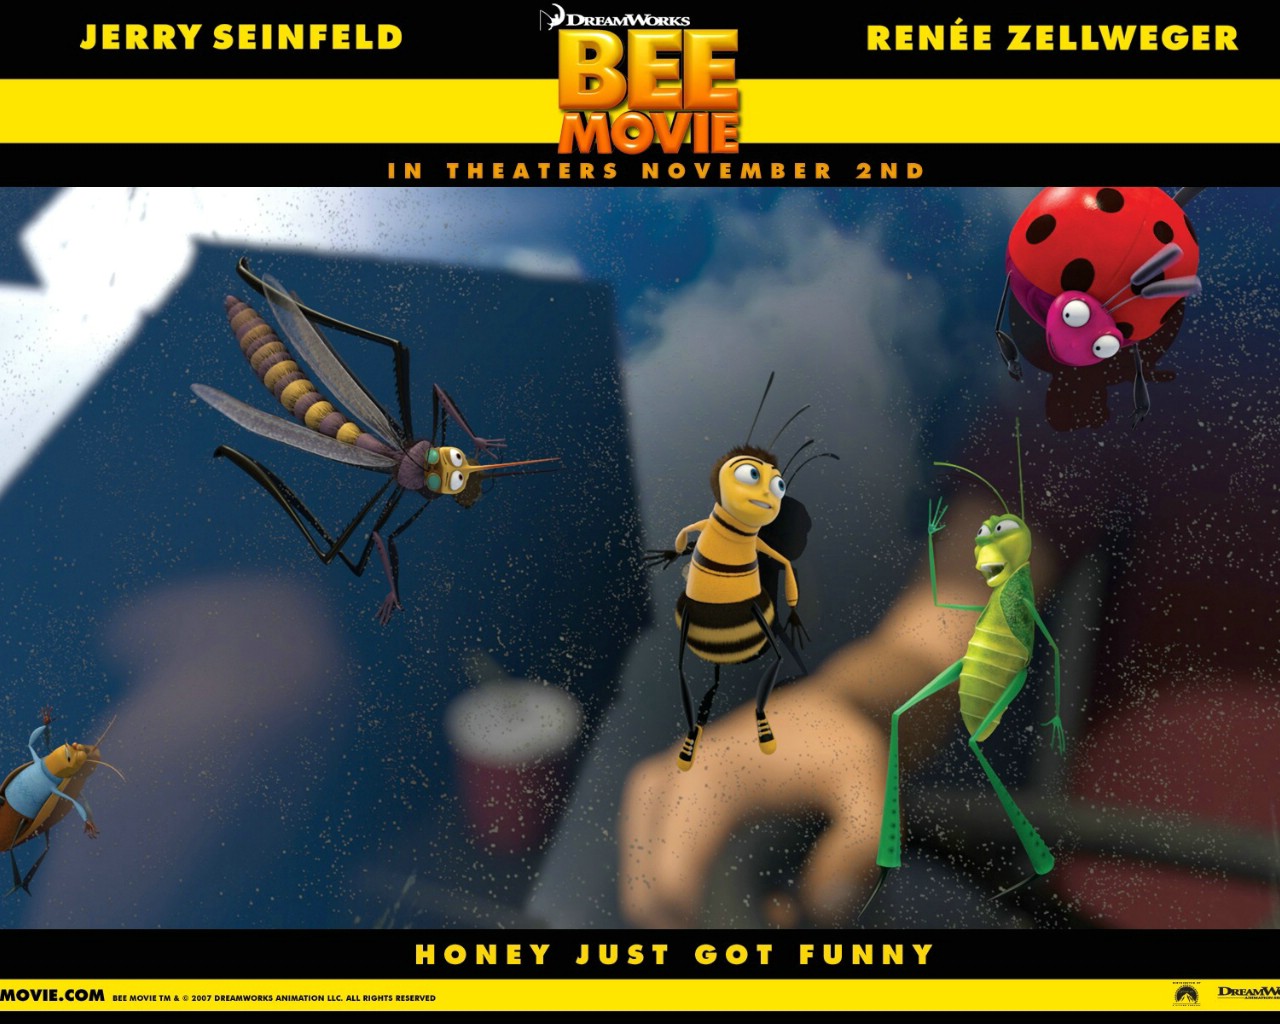 壁纸1280x1024电影壁纸 蜜蜂总动员 一只小蜜蜂 Bee Movie 2007 蜂电影 蜜蜂总动员壁纸 Movie Wallpaper Bee Movie 2007壁纸 《蜜蜂总动员 Bee Movie》壁纸 《蜜蜂总动员 Bee Movie》图片 《蜜蜂总动员 Bee Movie》素材 影视壁纸 影视图库 影视图片素材桌面壁纸